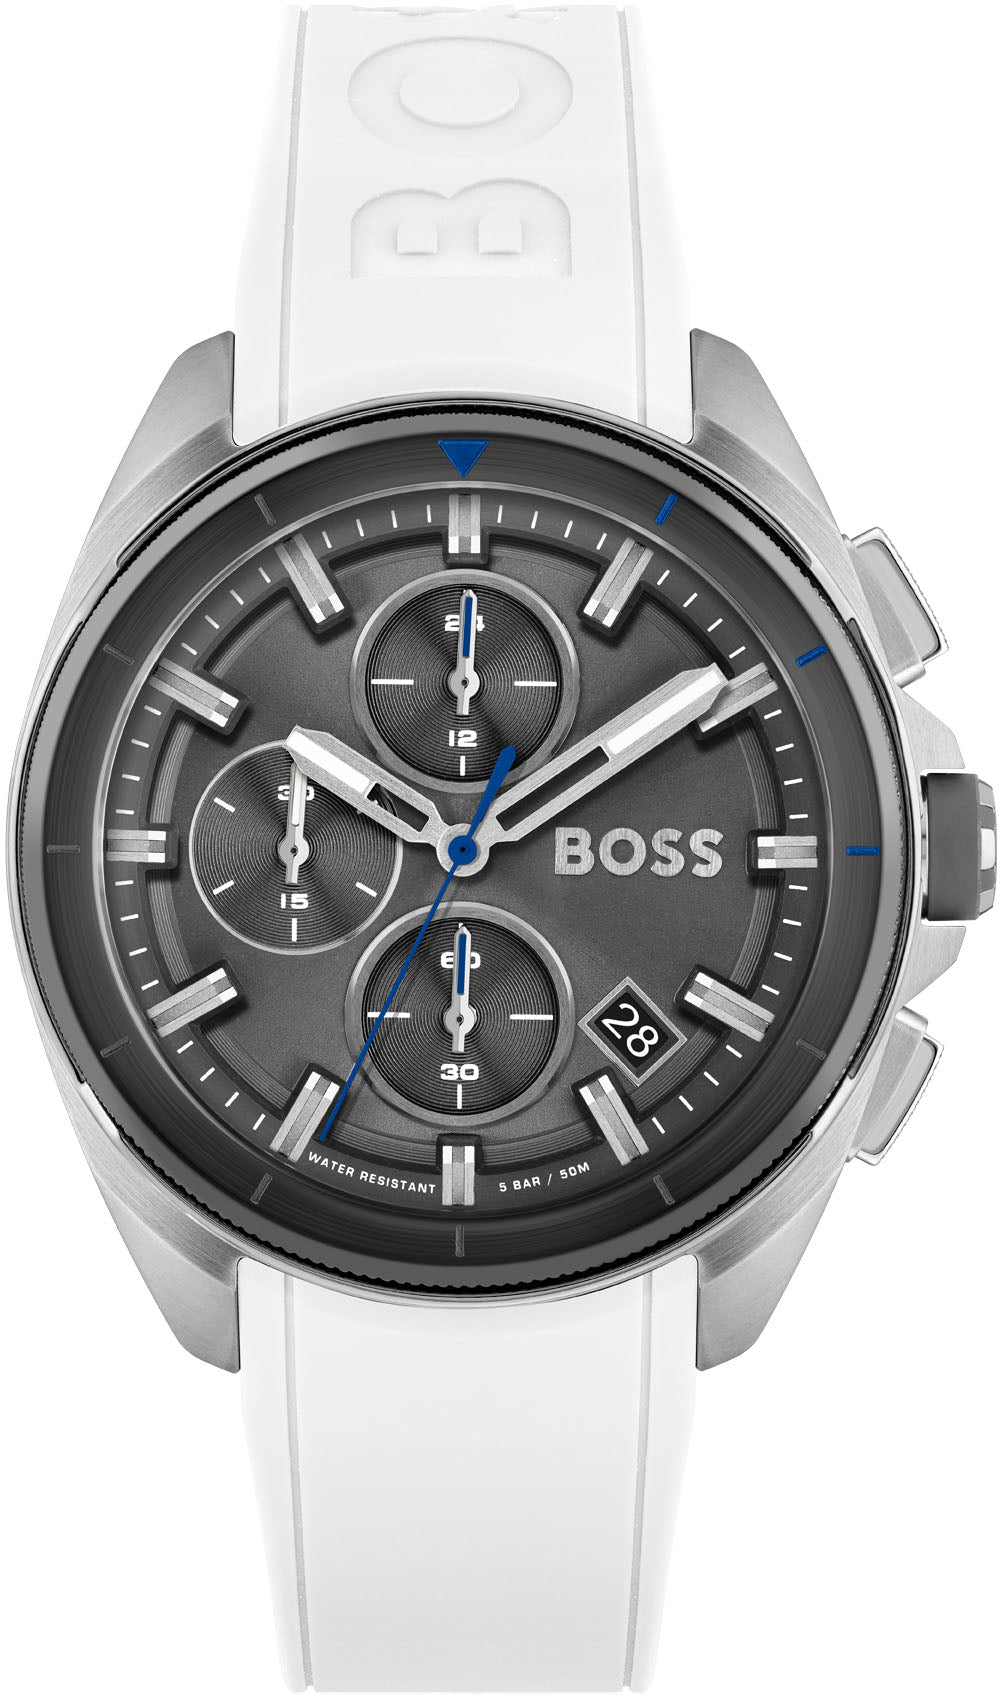 Photos - Wrist Watch Boss Watch Volane D HBS-459